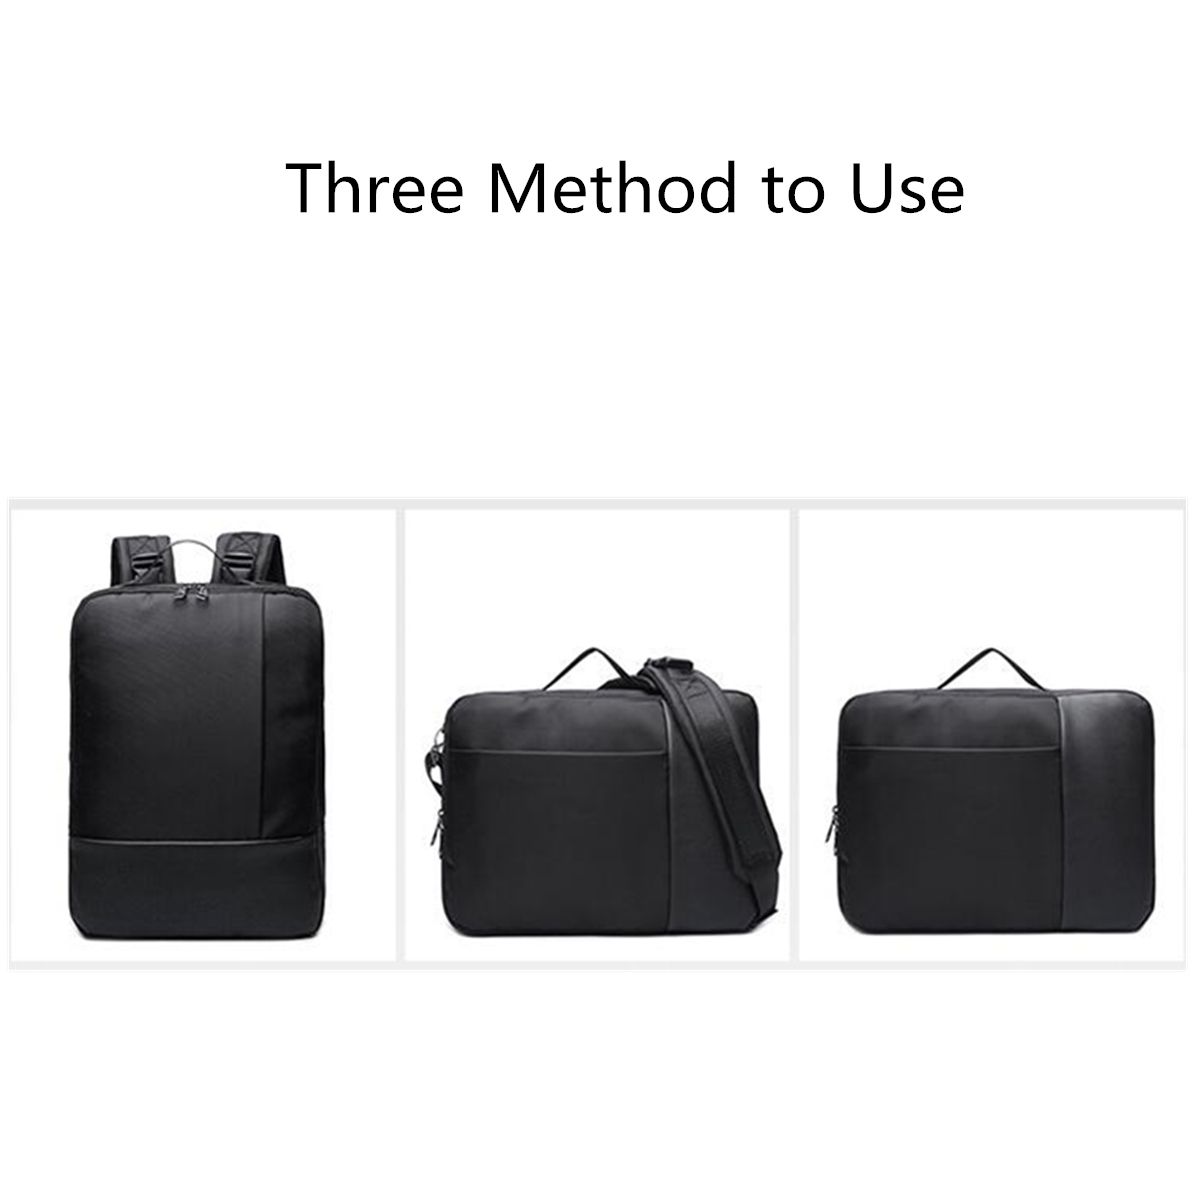 Laptop-Backpack-Mens-Shoulder-Bag-Handbag-Laptop-Bag-Casual-Large-Capacity-Travel-Backpack-for-Busin-1537820